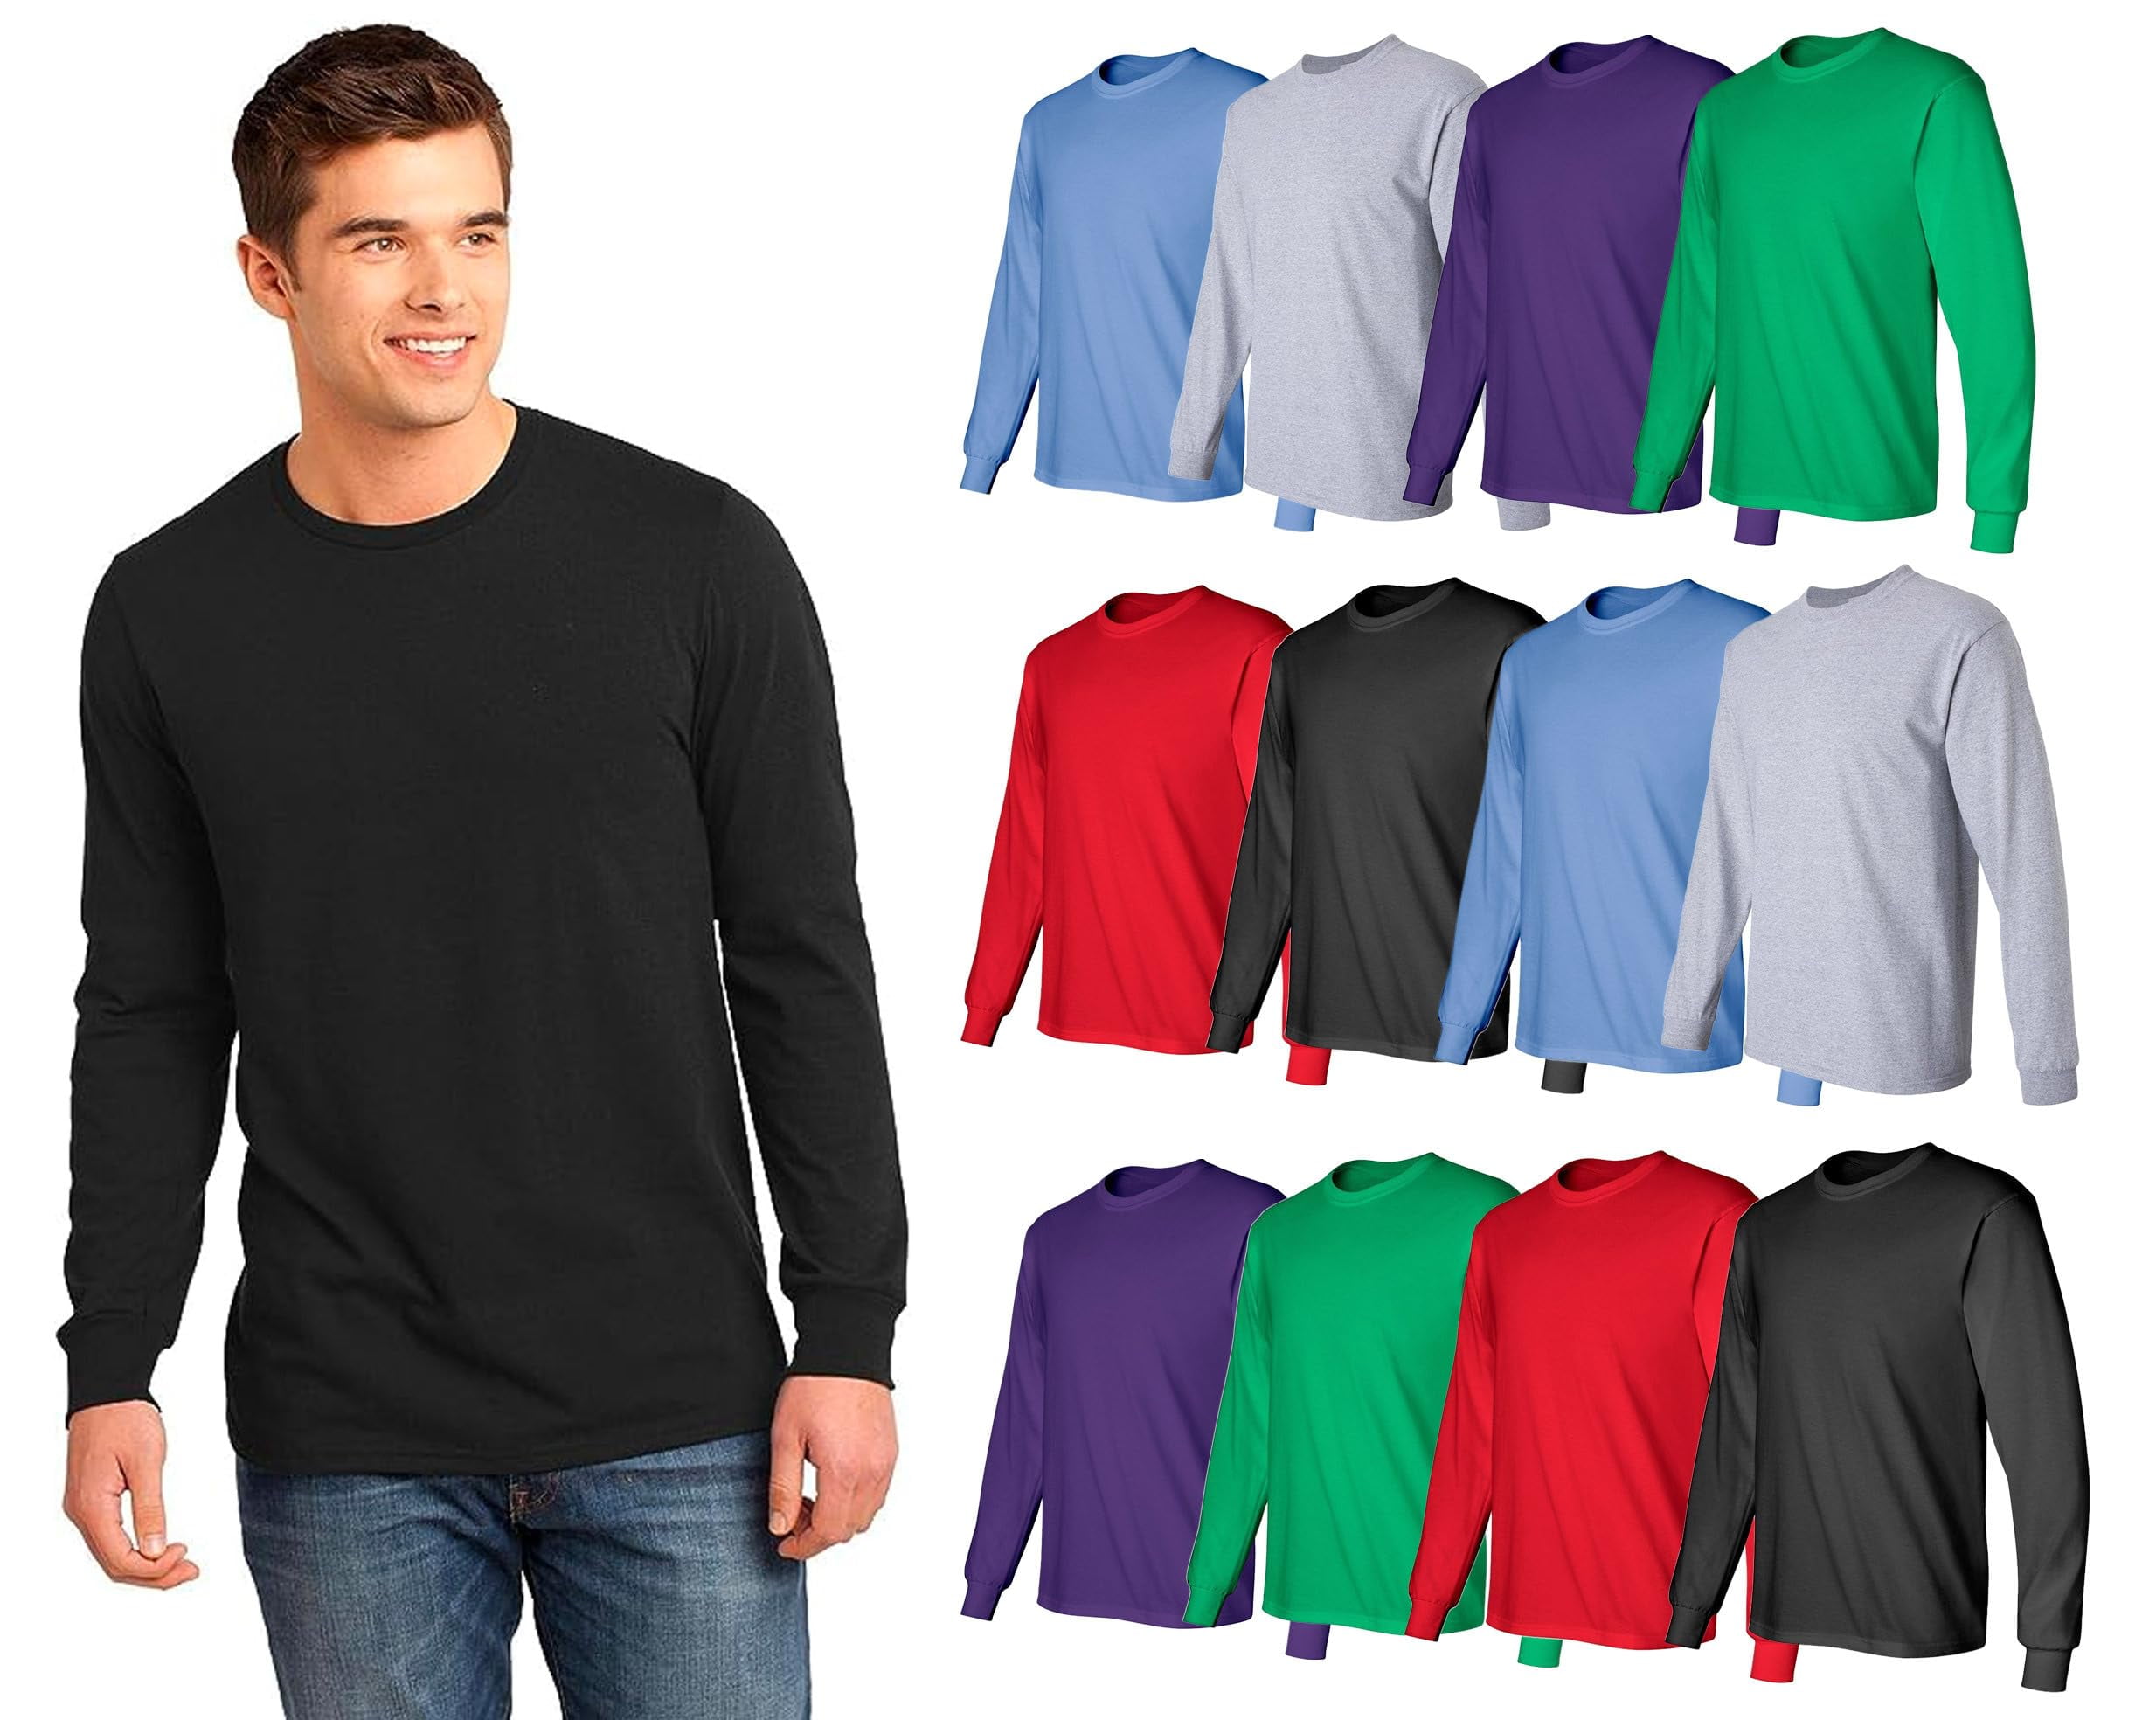 T-Shirts for Men - Gildan 2000 S M L XL 2XL 3XL Classic Short Sleeve Shirt  - Best Gifts for Men Cotton Tee 